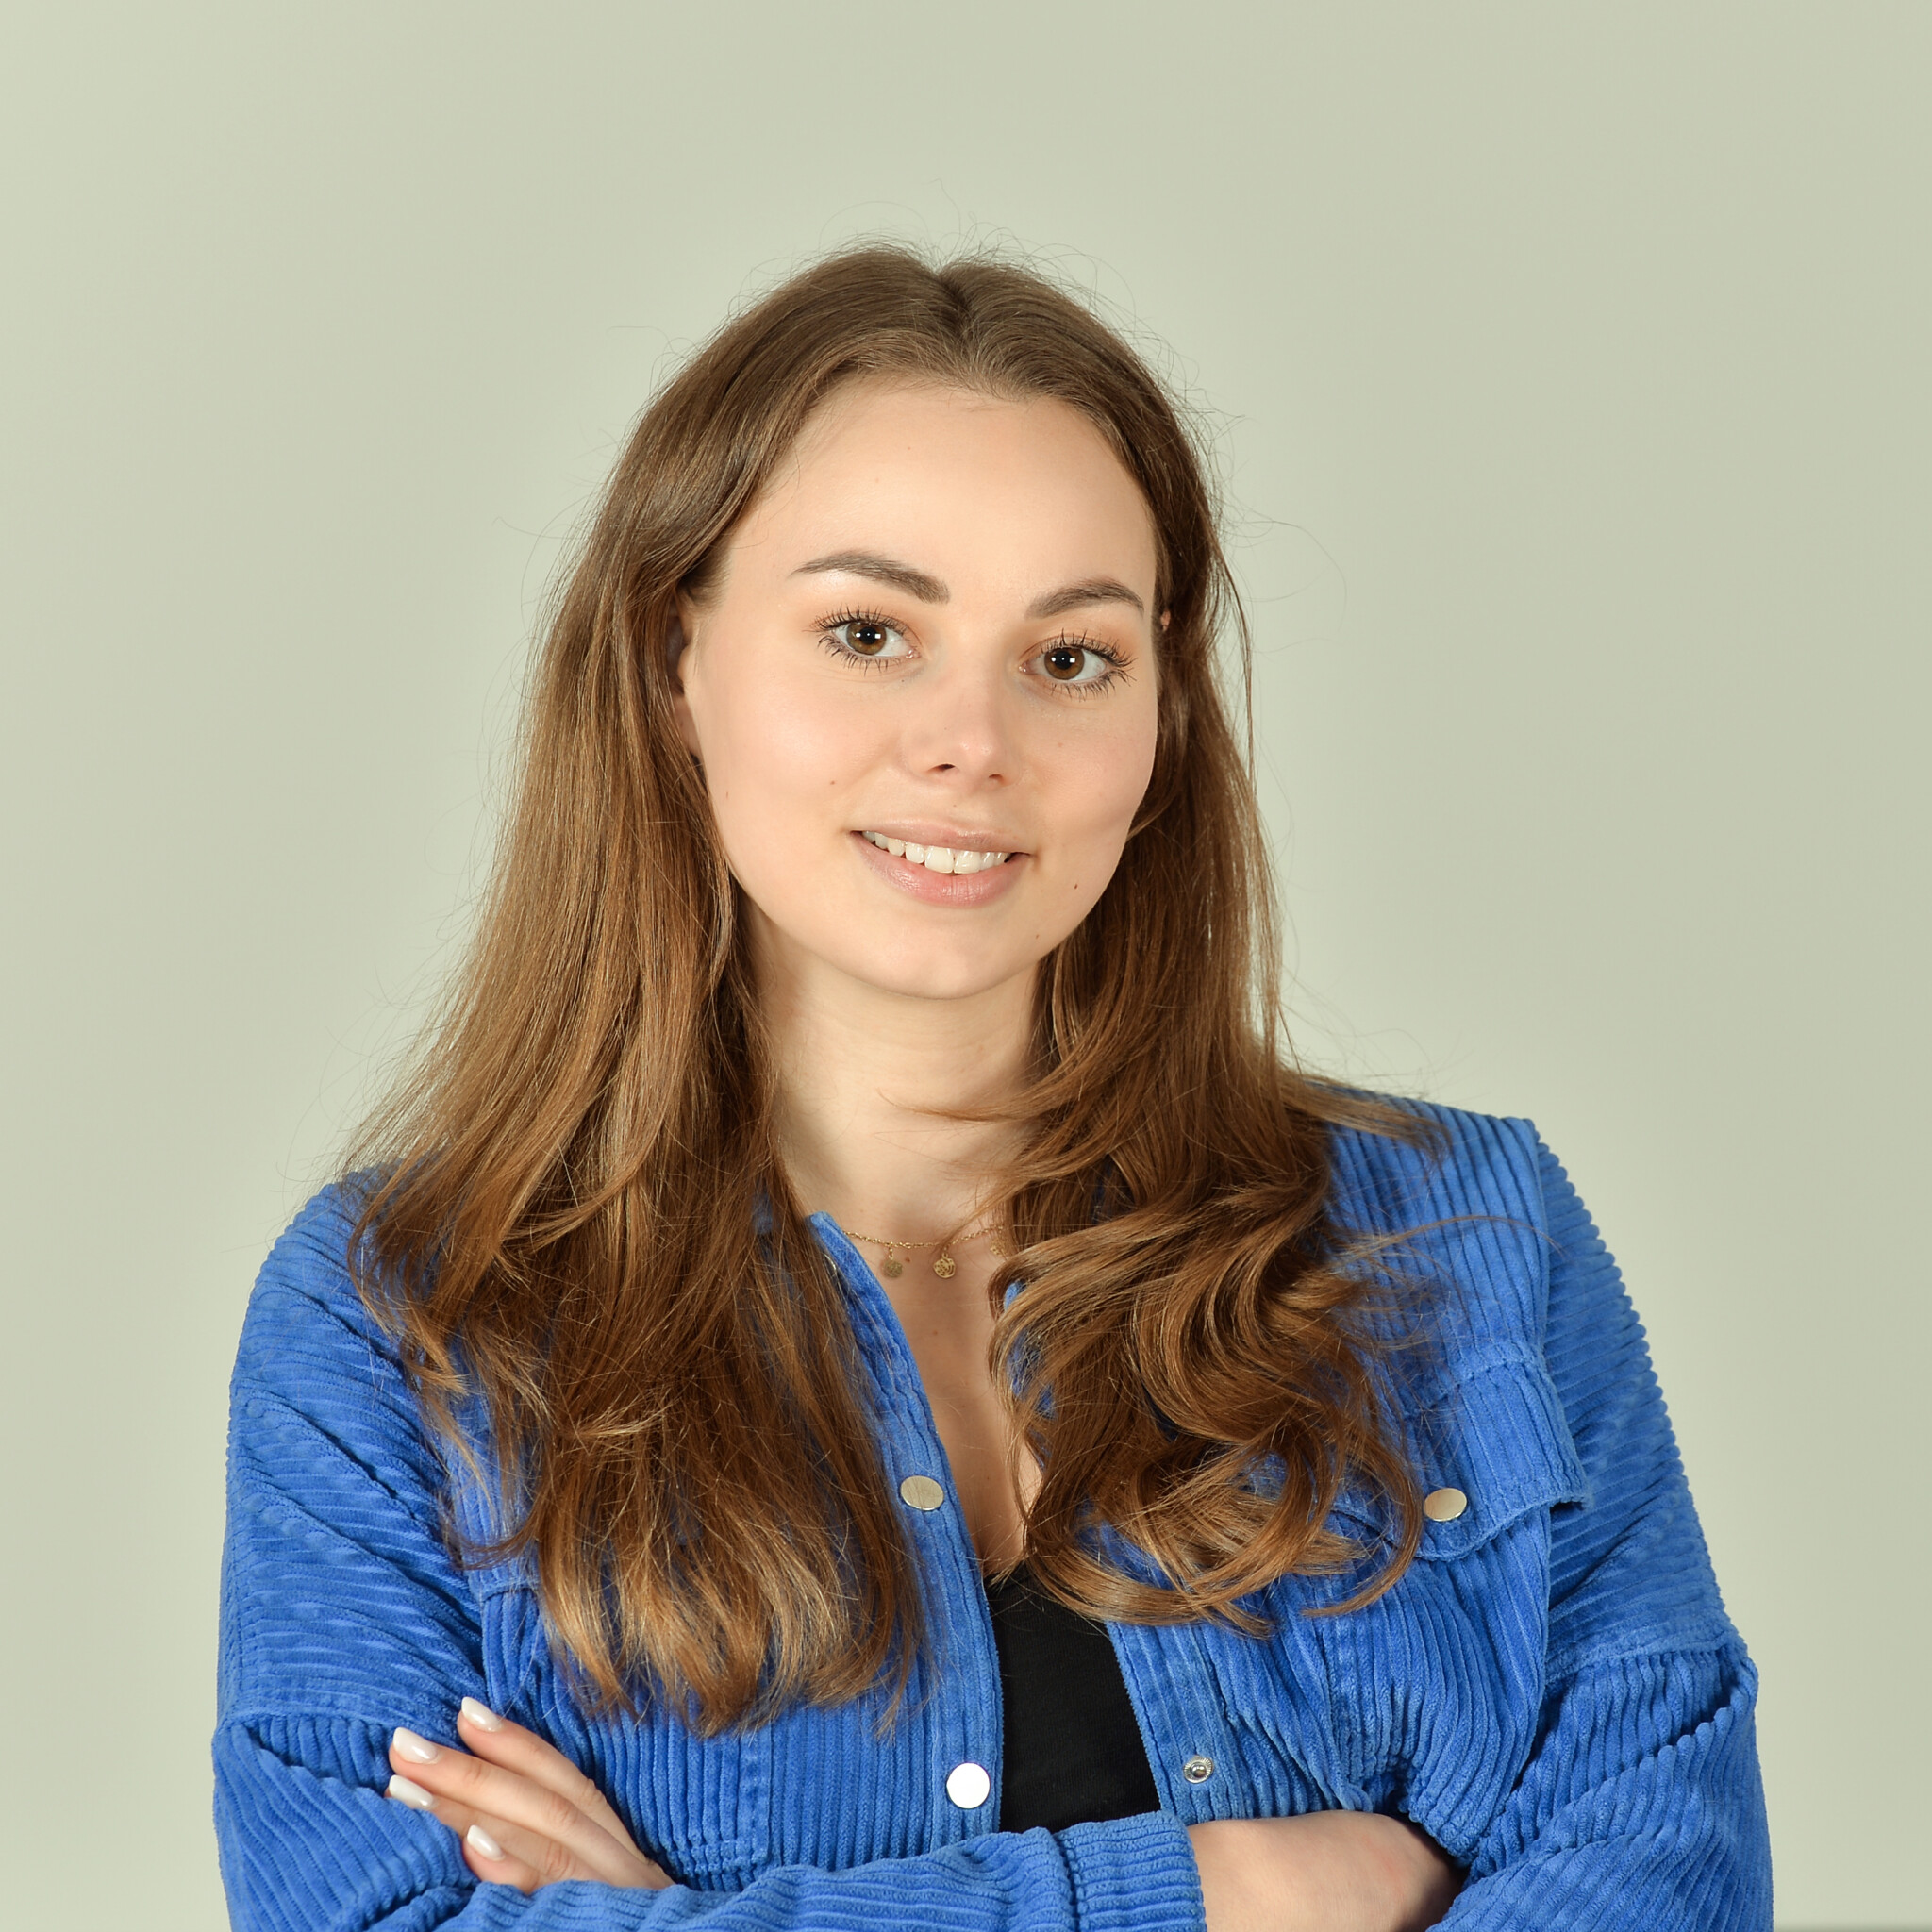 Profilbild von Liv Woitke im schwarzen Top und blauer Bluse